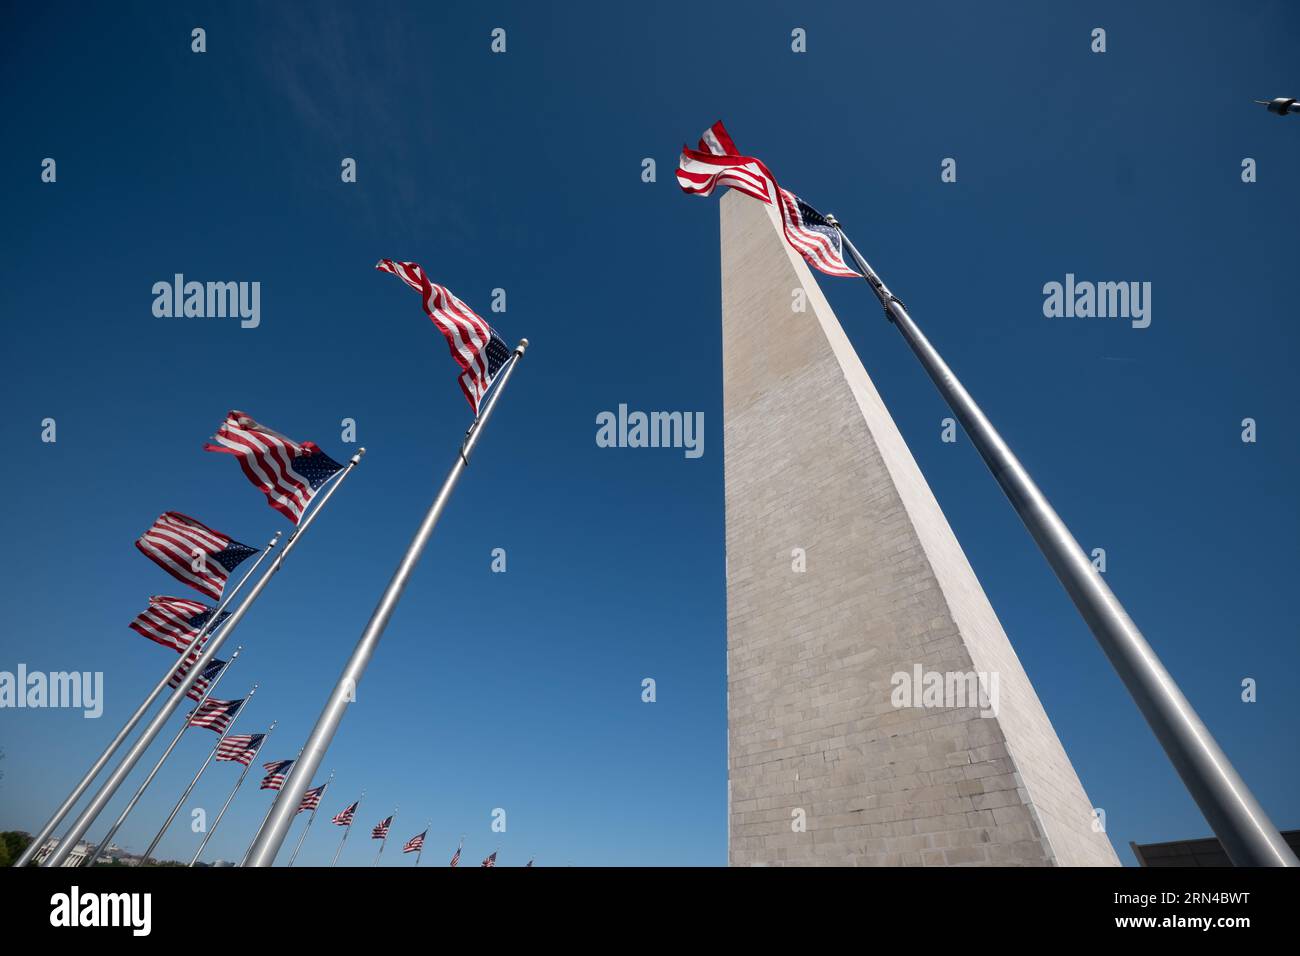 WASHINGTON, DC - torreggiante a 554 metri sopra il National Mall di Washington DC, il Washington Monument commemora George Washington, il primo presidente degli Stati Uniti. Dopo un progetto di costruzione decennale, fu completato nel 1884. Ha la forma di un obelisco in stile egiziano e le sue spesse pareti di marmo racchiudono un ascensore e una lunga scala a chiocciola che fornisce accesso a piccole camere in cima. Cinquanta bandiere americane suonano la sua base. Foto Stock